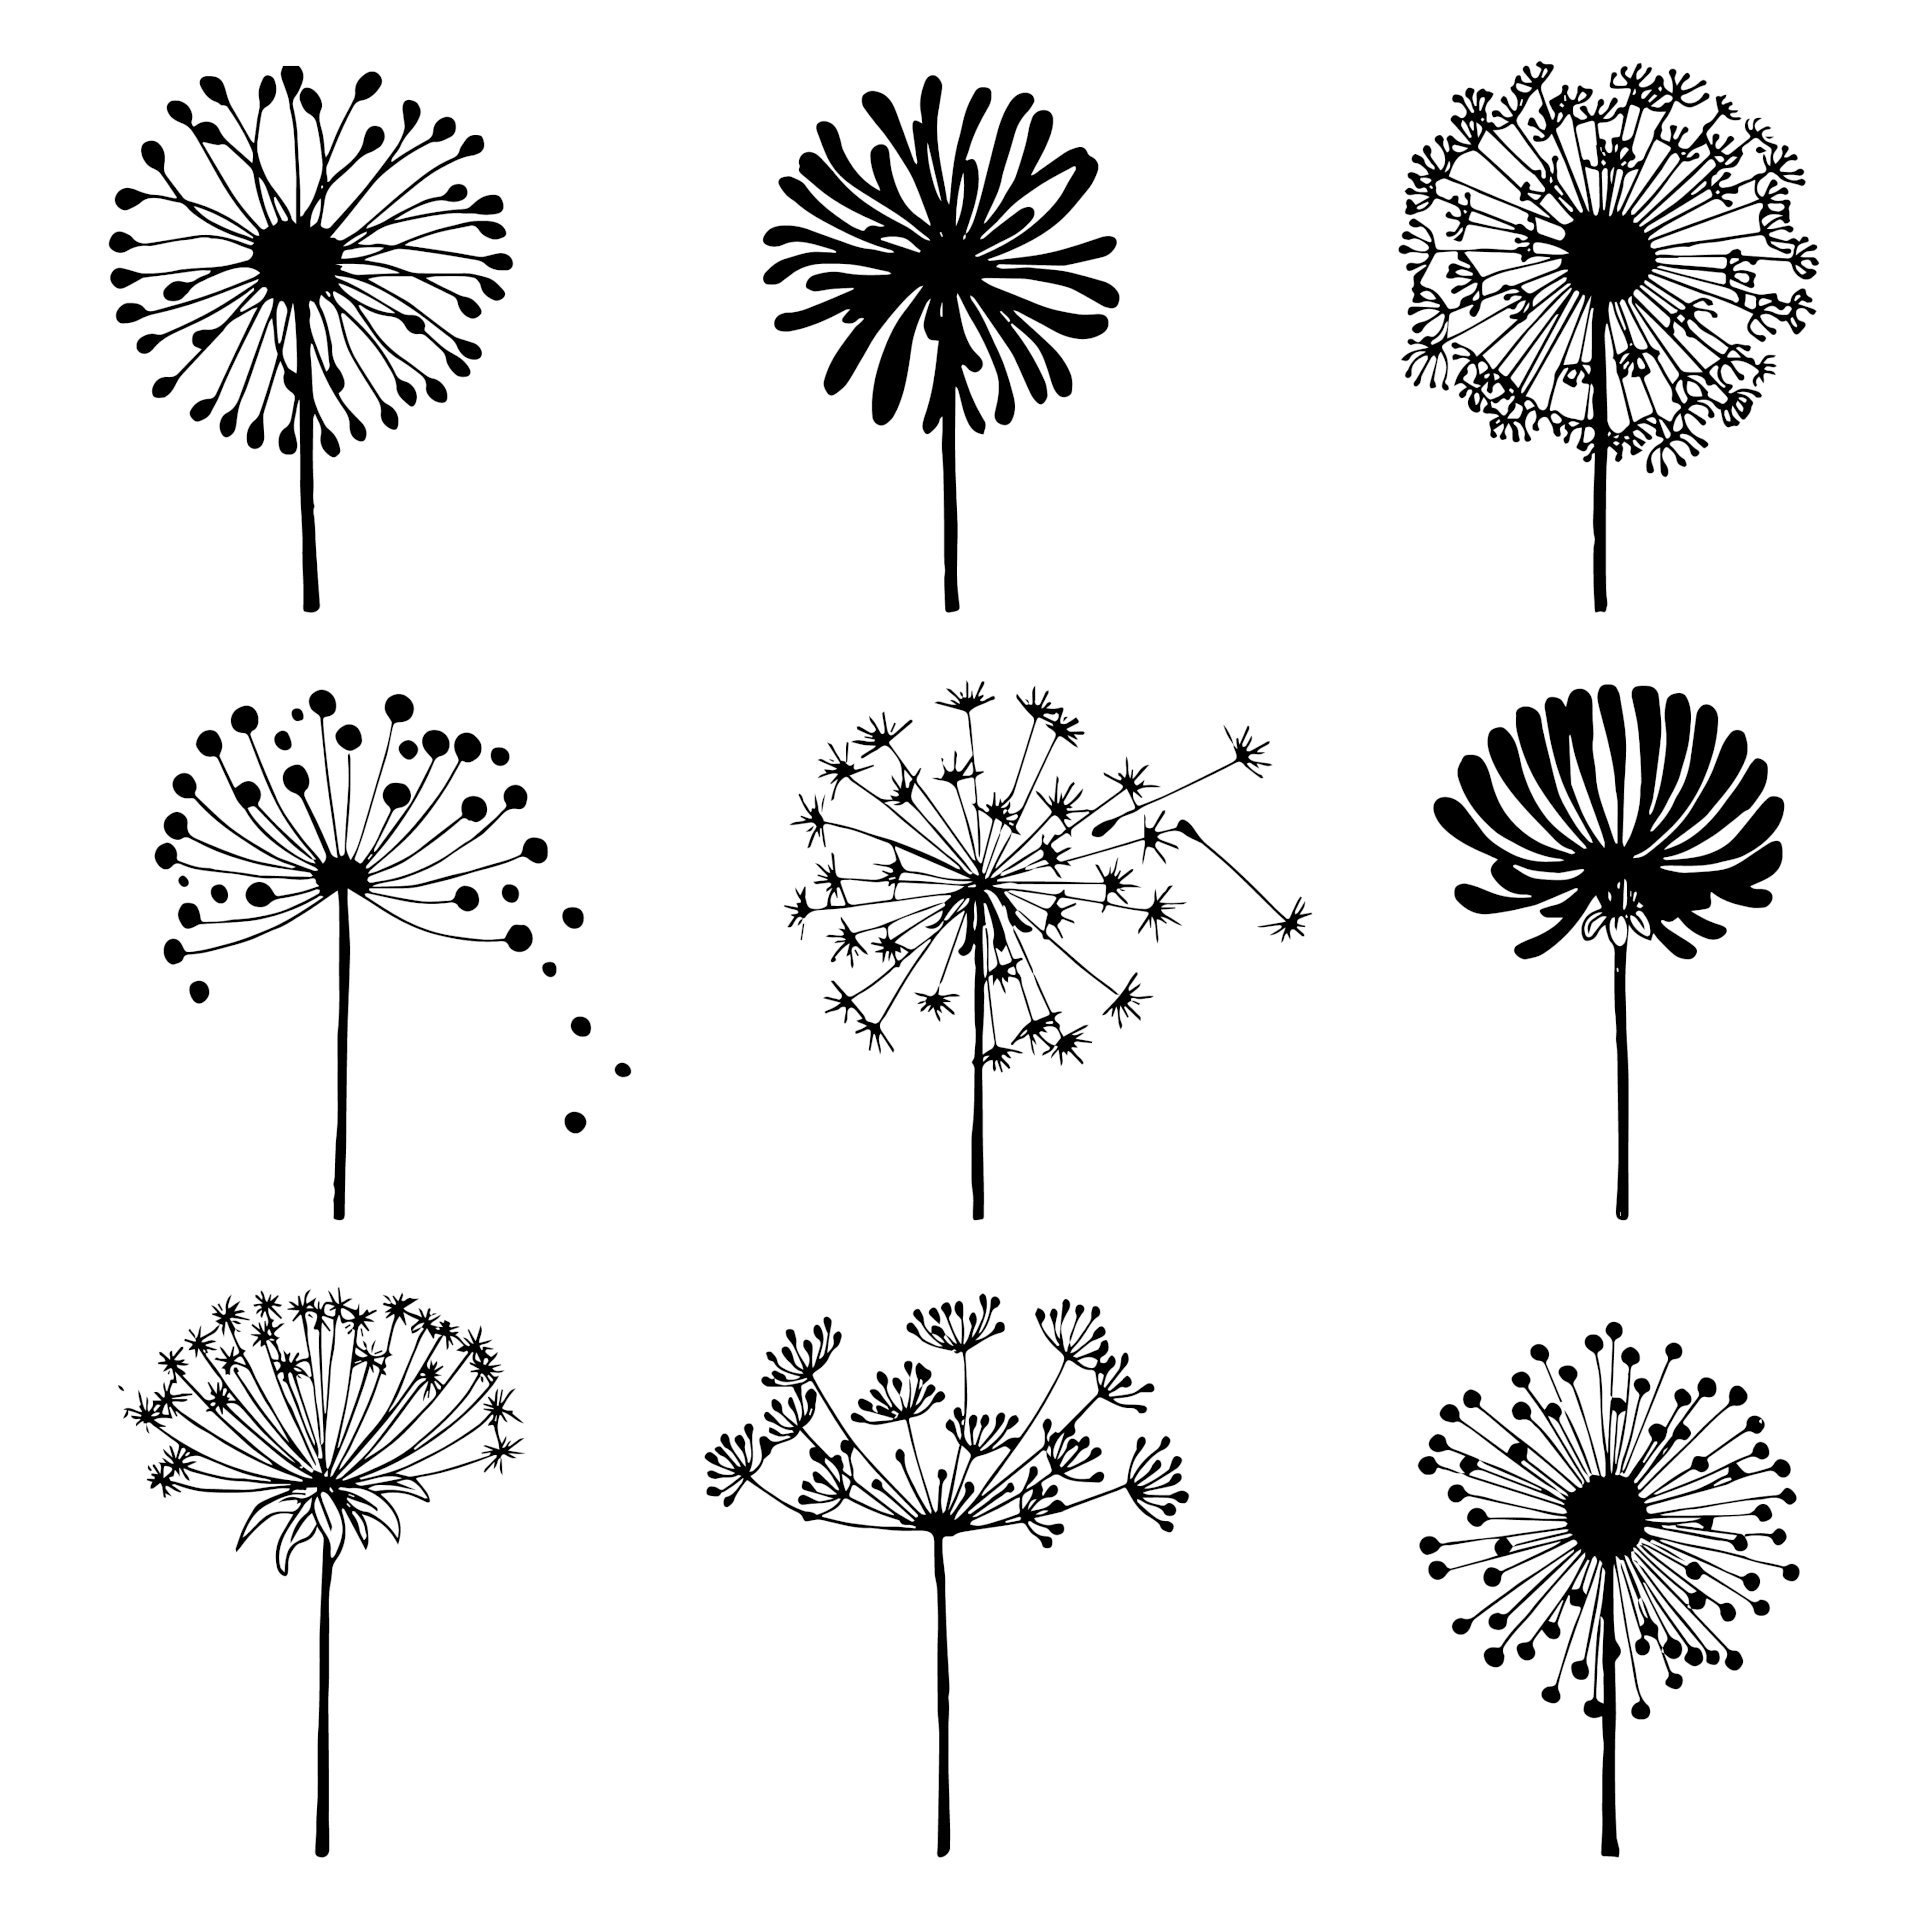 Vẽ hoa l Vẽ Hoa Bồ Công Anh  vẽ đơn giản  How to draw a Dandelion   YouTube